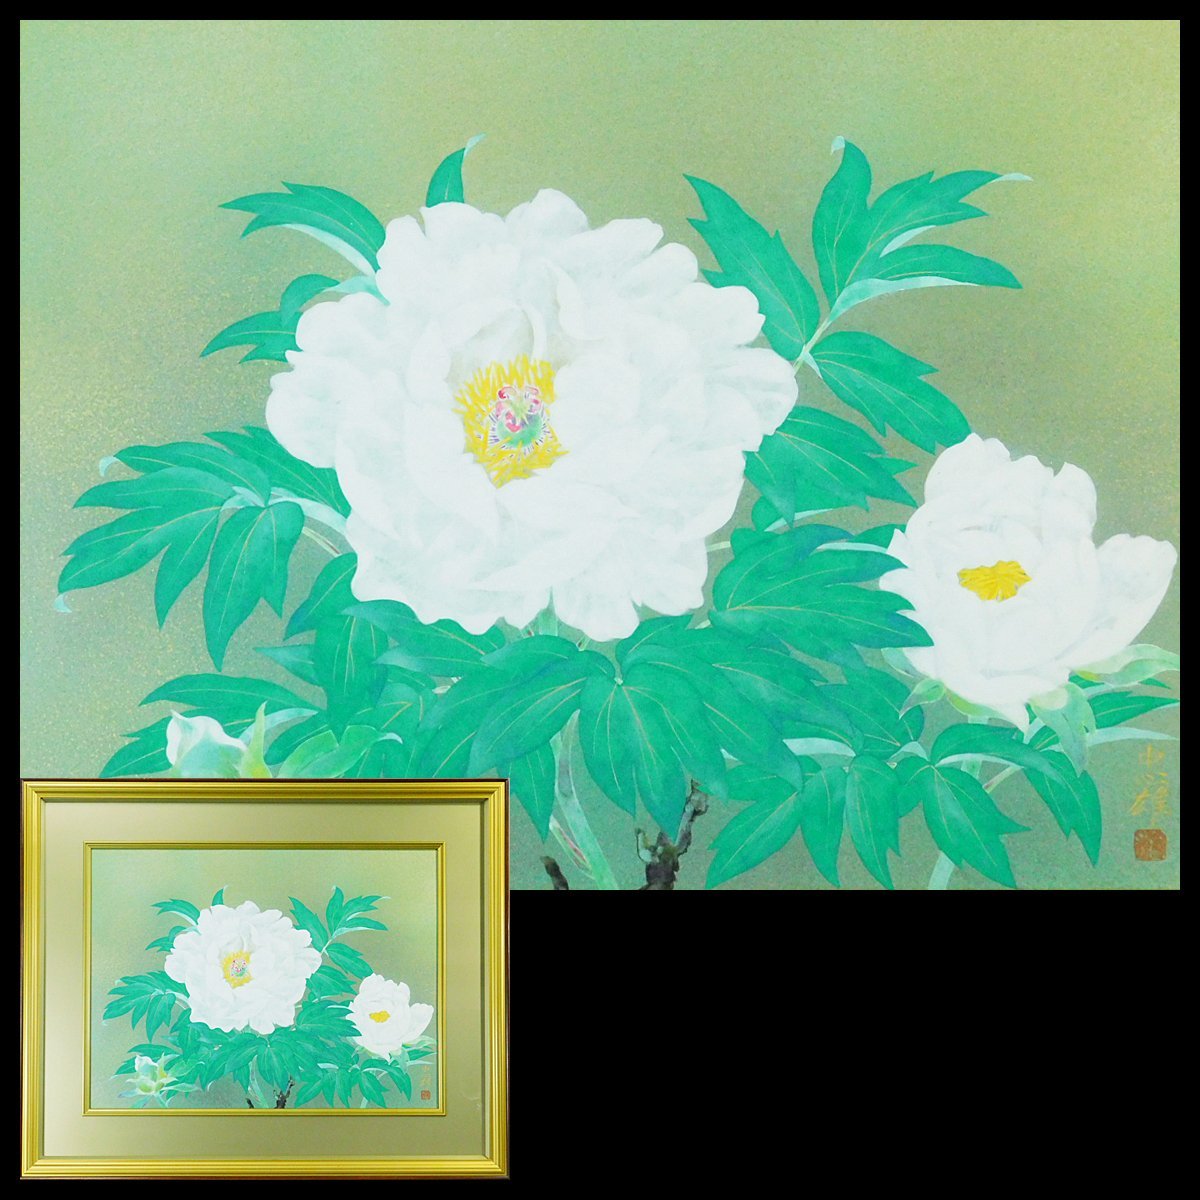 टाडाओ ओकाजाकी पेओनी जापानी पेंटिंग नंबर 12 पेपरबैक फ़्रेमयुक्त (सह-सीलबंद) विशेष बॉक्स (टैटू) पीला बैग सोगाकाई दीर्घकालिक भंडारण आइटम n23080603, चित्रकारी, जापानी पेंटिंग, फूल और पक्षी, पक्षी और जानवर